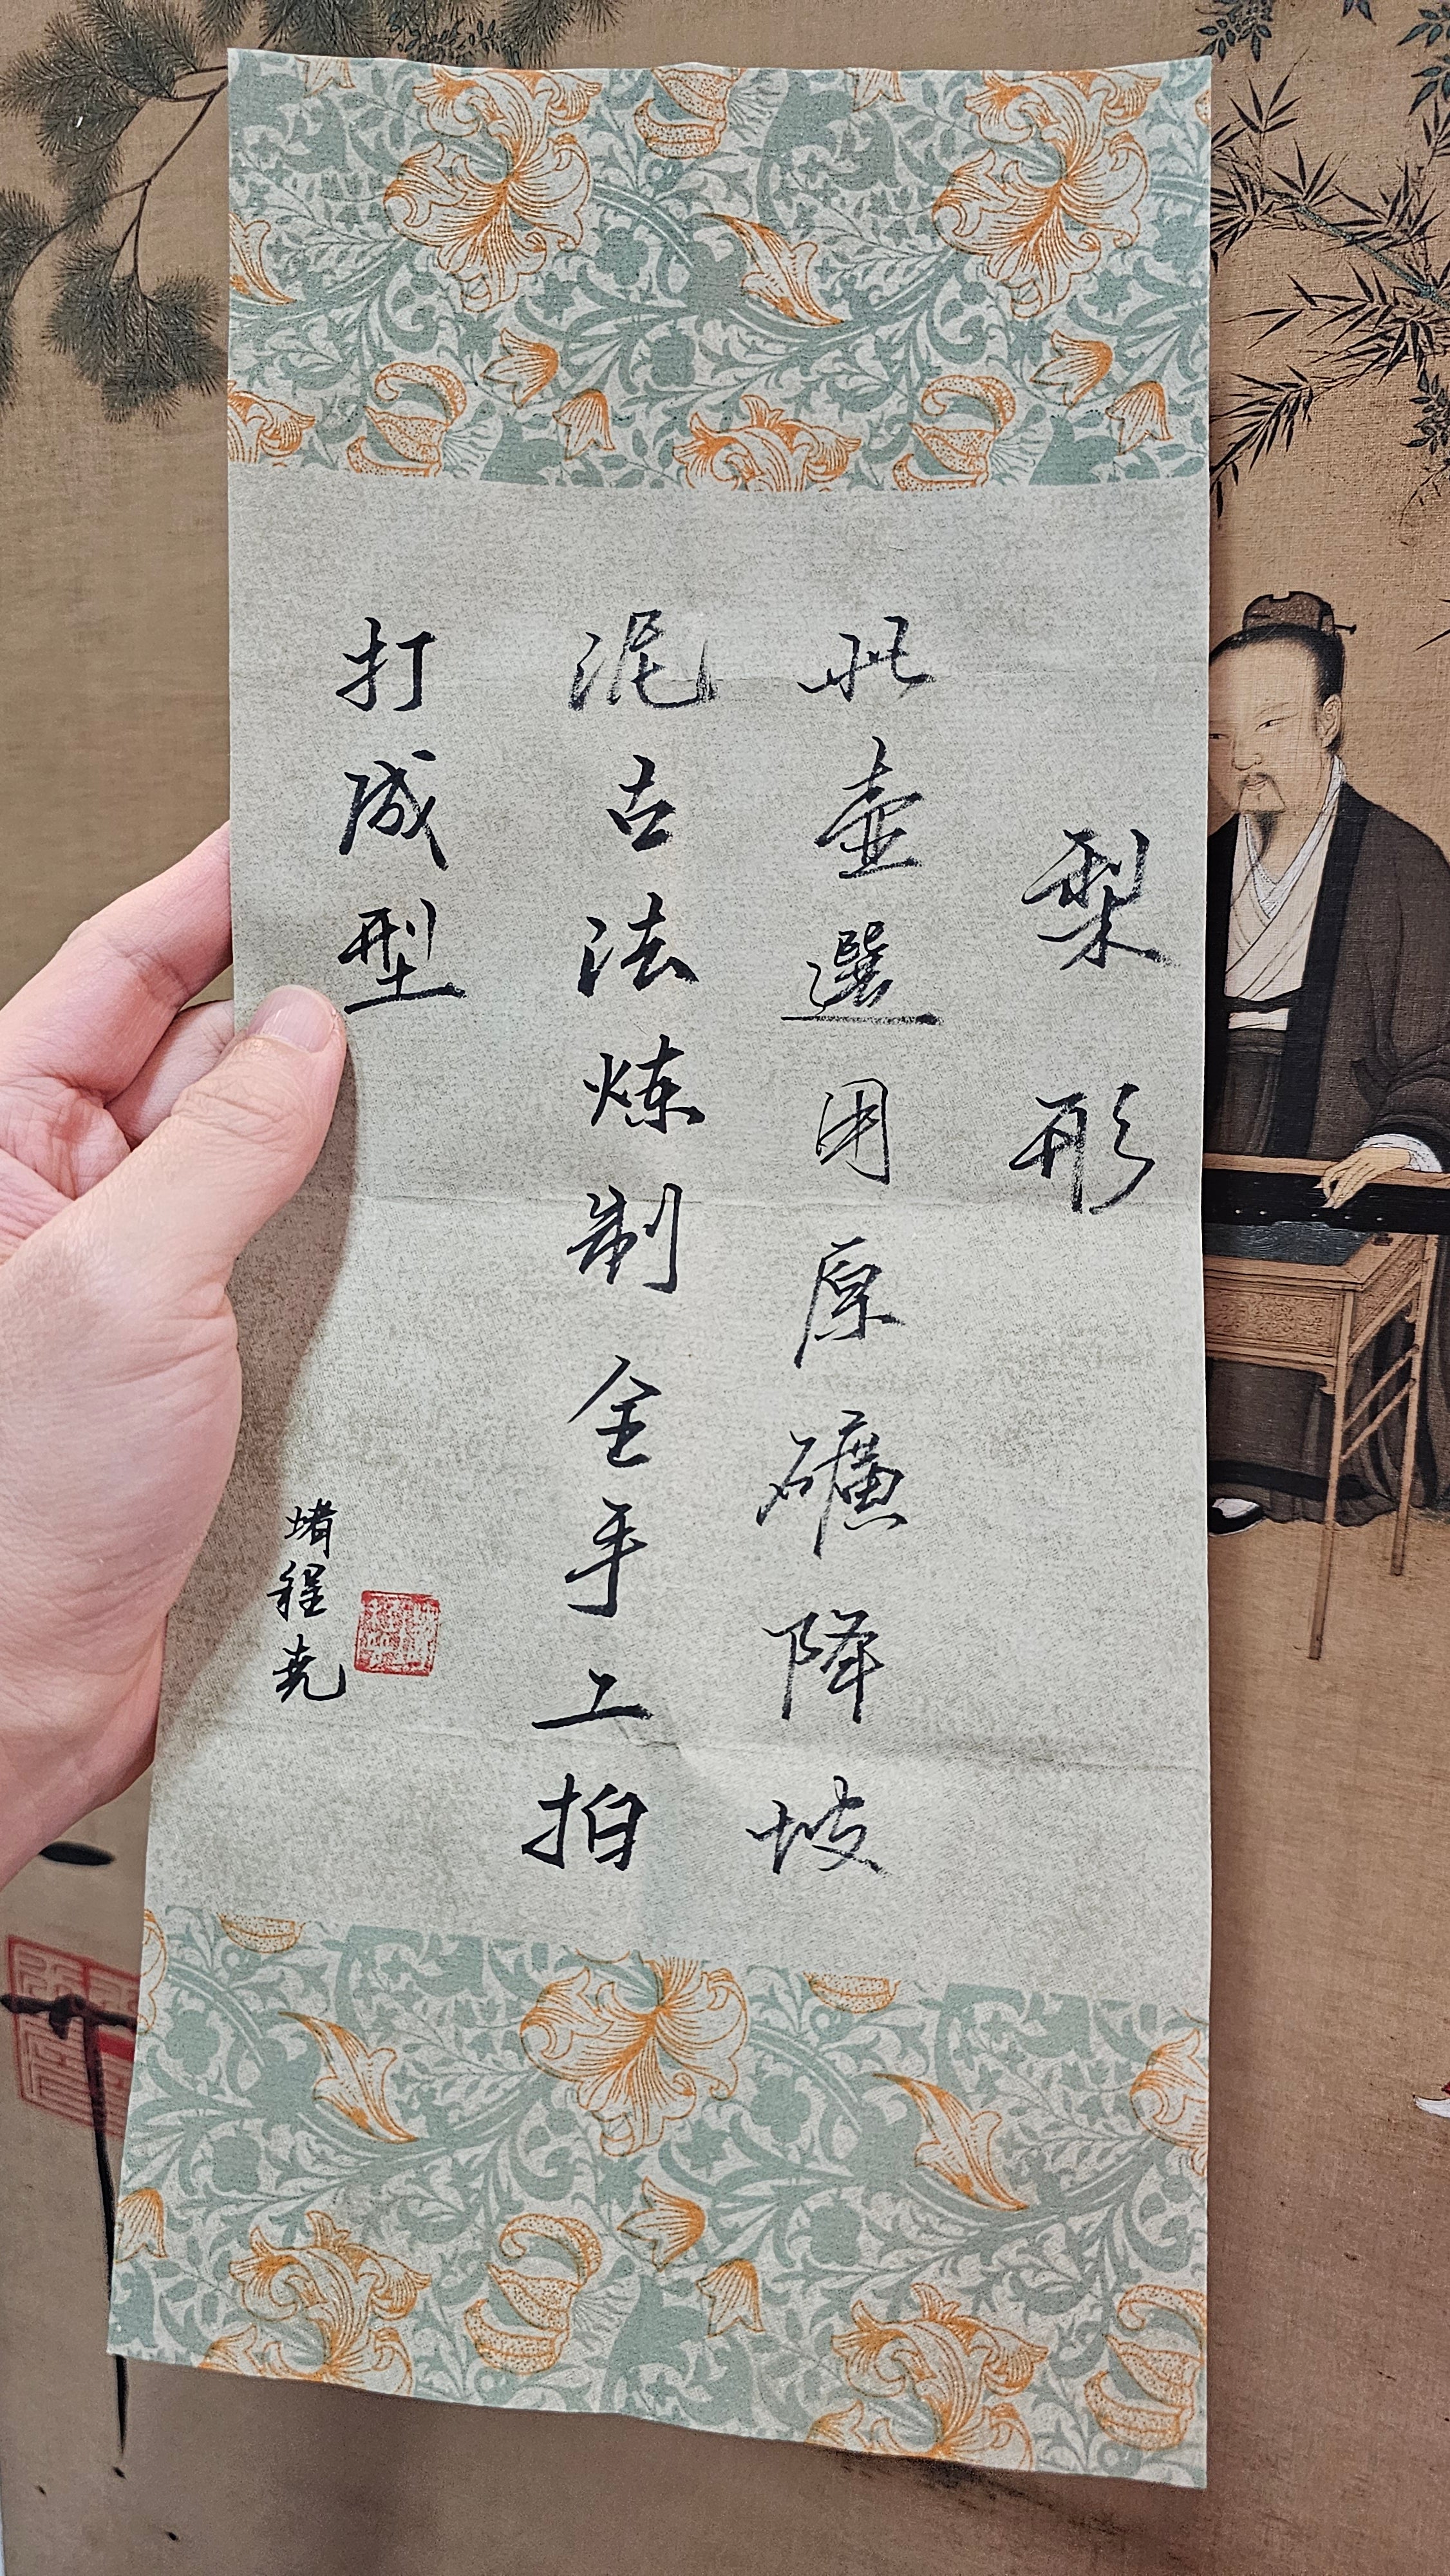 Li Xing 梨形, 205.8ml, Gu Fa Lian Ni (Most Archaic Clay Forming) ~ Hong Jiang Po Ni *古法练泥~红降坡泥, L4 Assoc Master Du Cheng Yao 堵程尧。